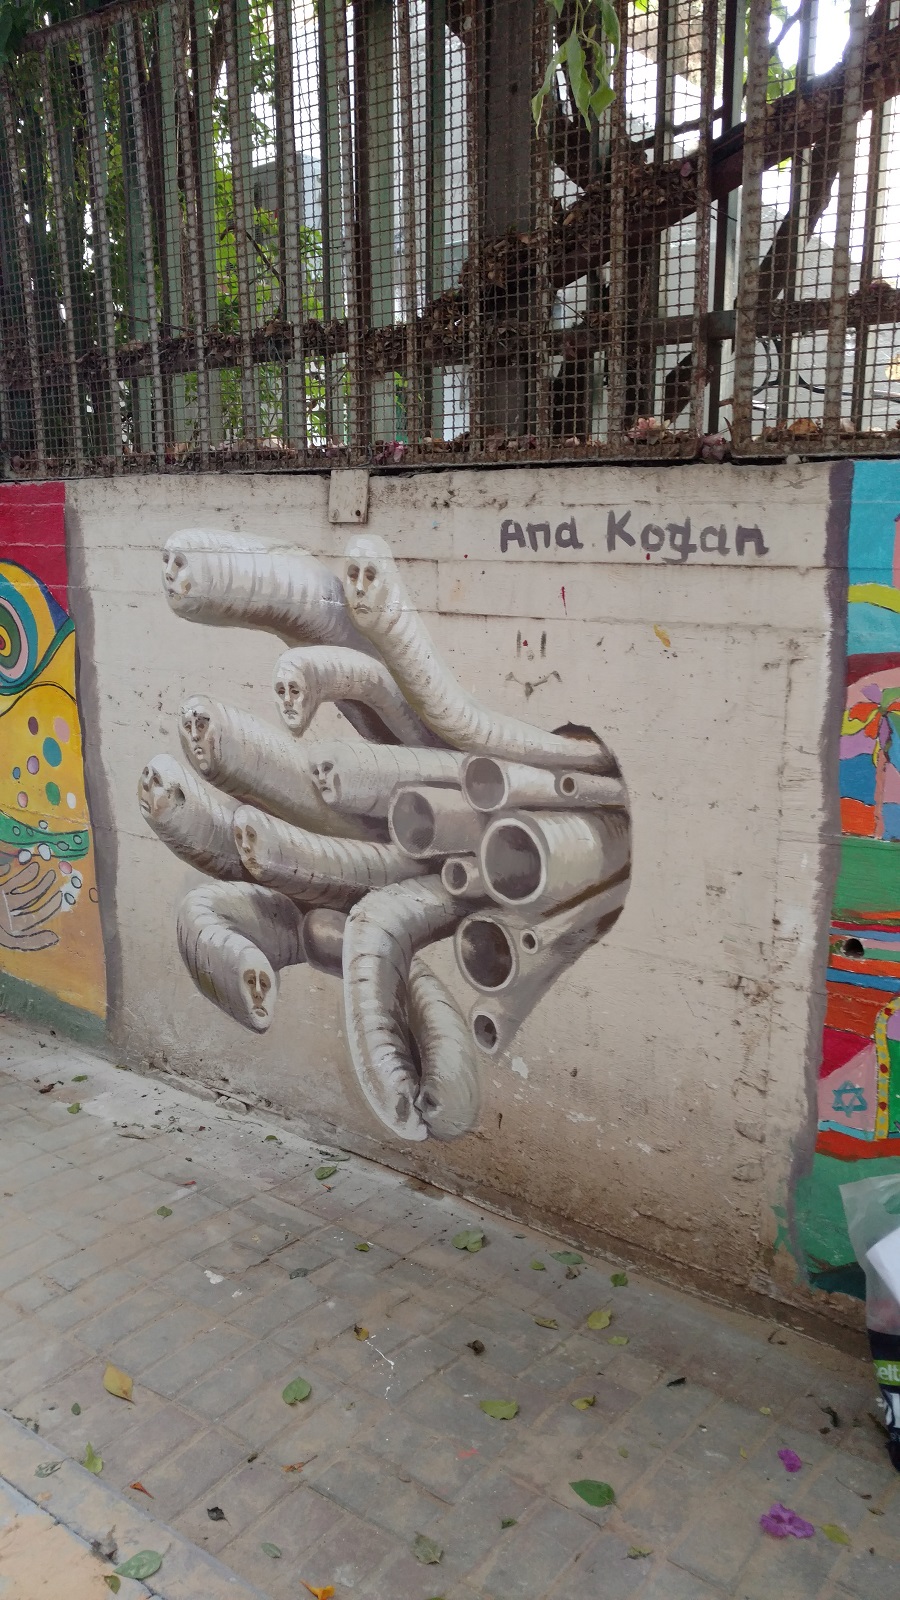 Graffiti by Ana Kogan in the school in Tel Aviv